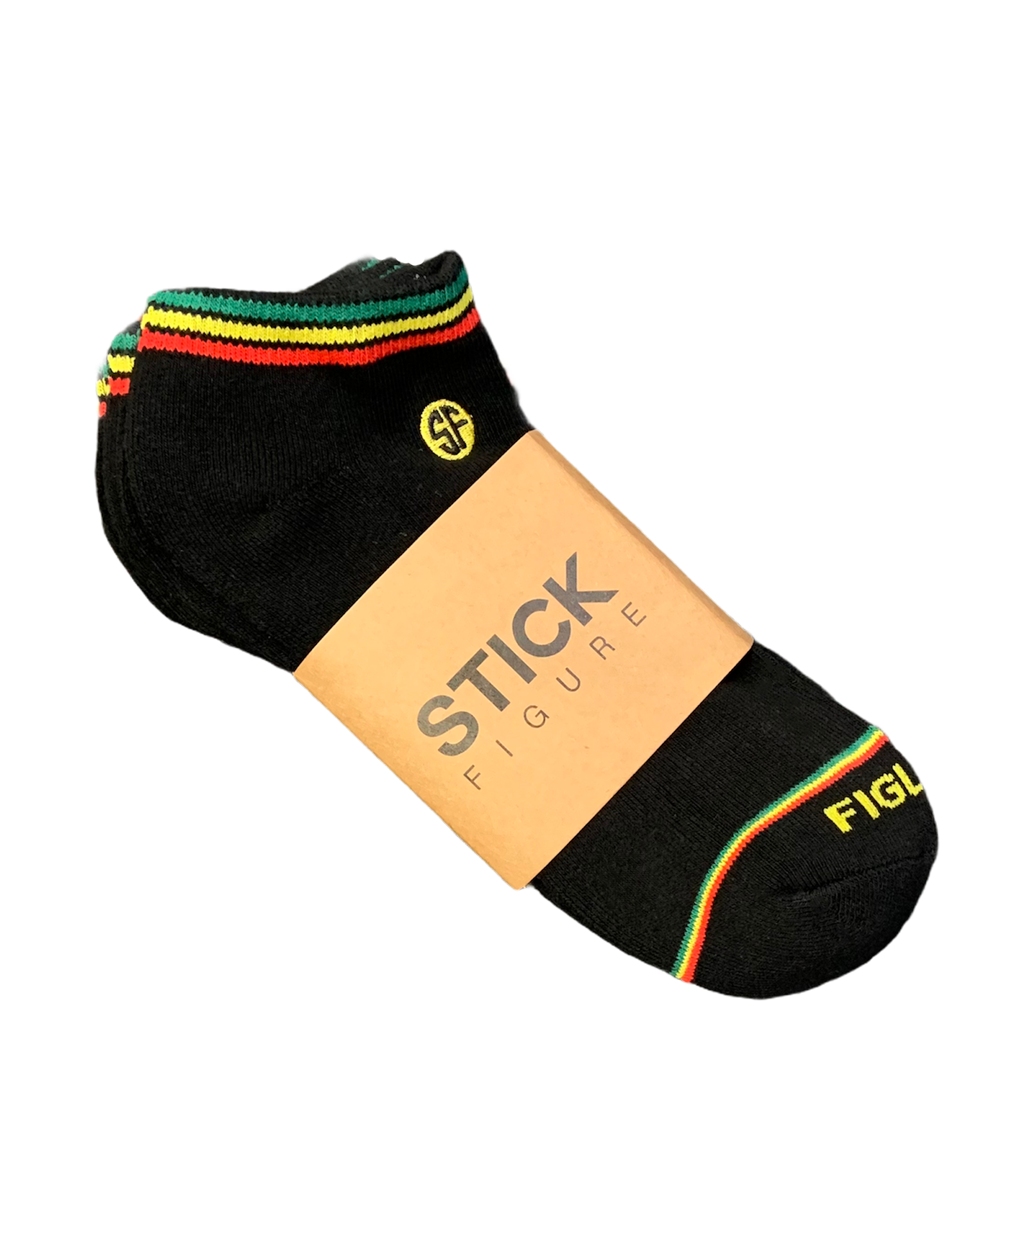 SF Short Socks 6 Pack